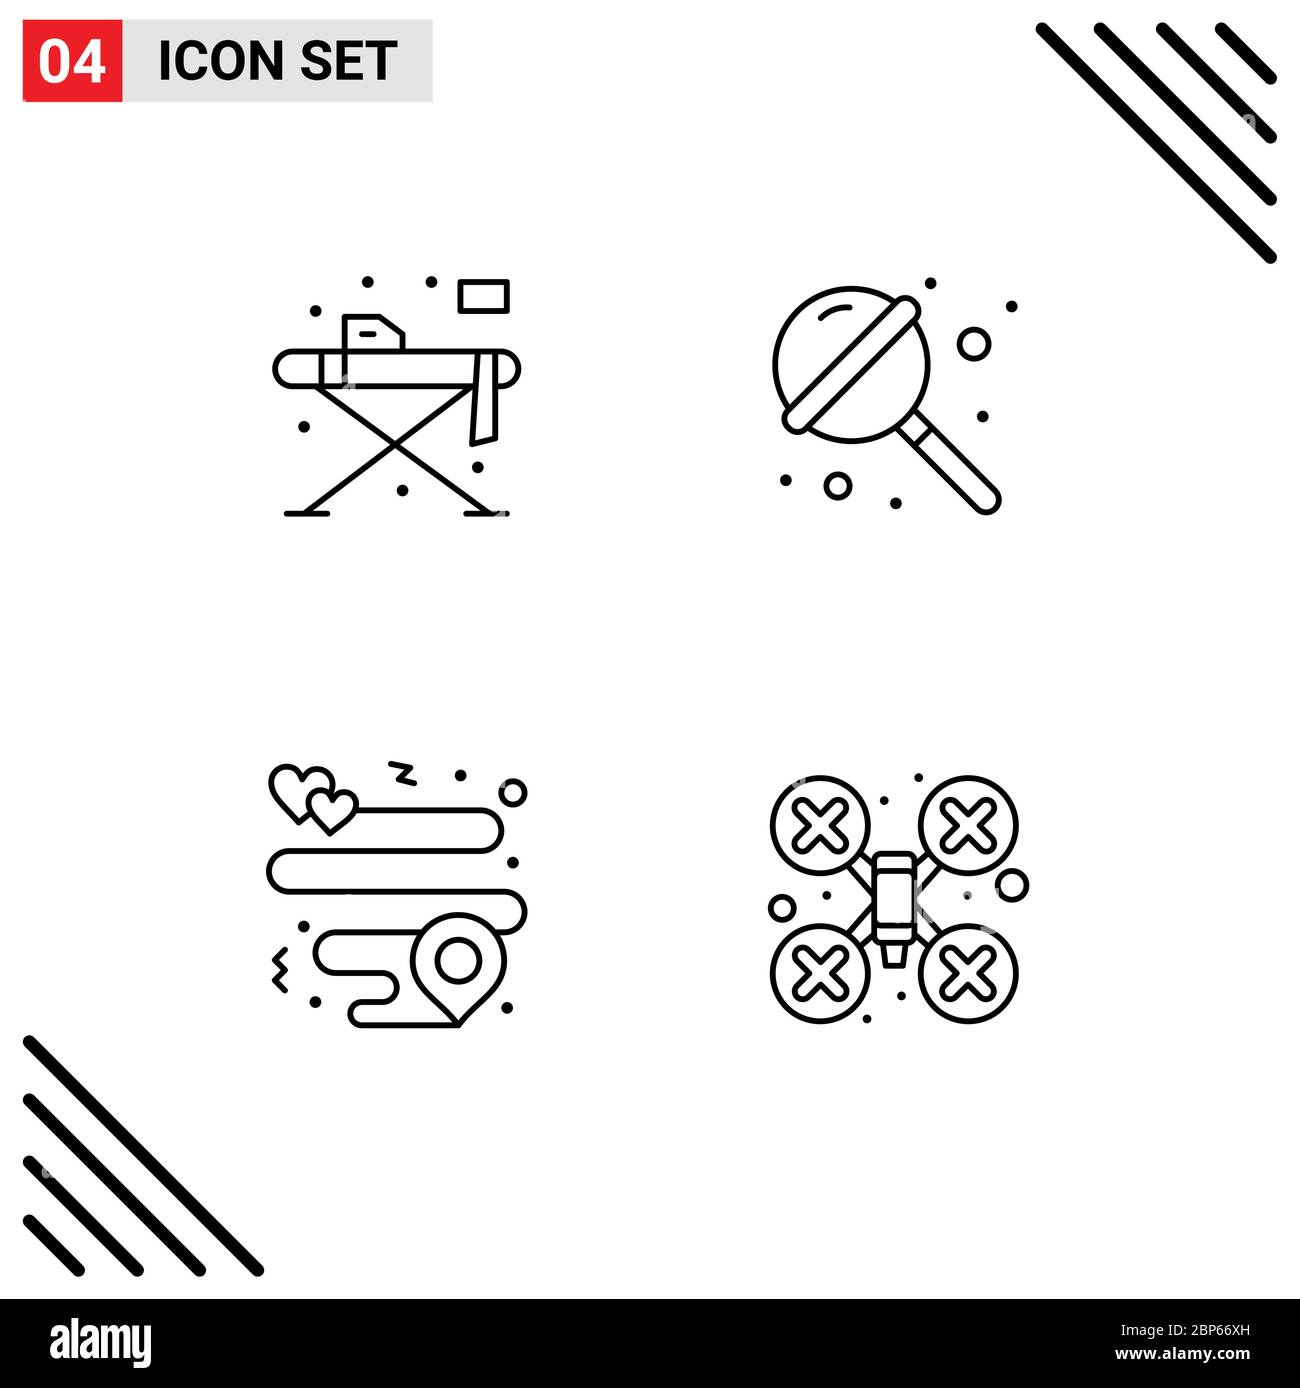 4 icone creative segni e simboli moderni di casa, posizione, tavolo, zucchero, Cam Editable Vector Design Elements Illustrazione Vettoriale